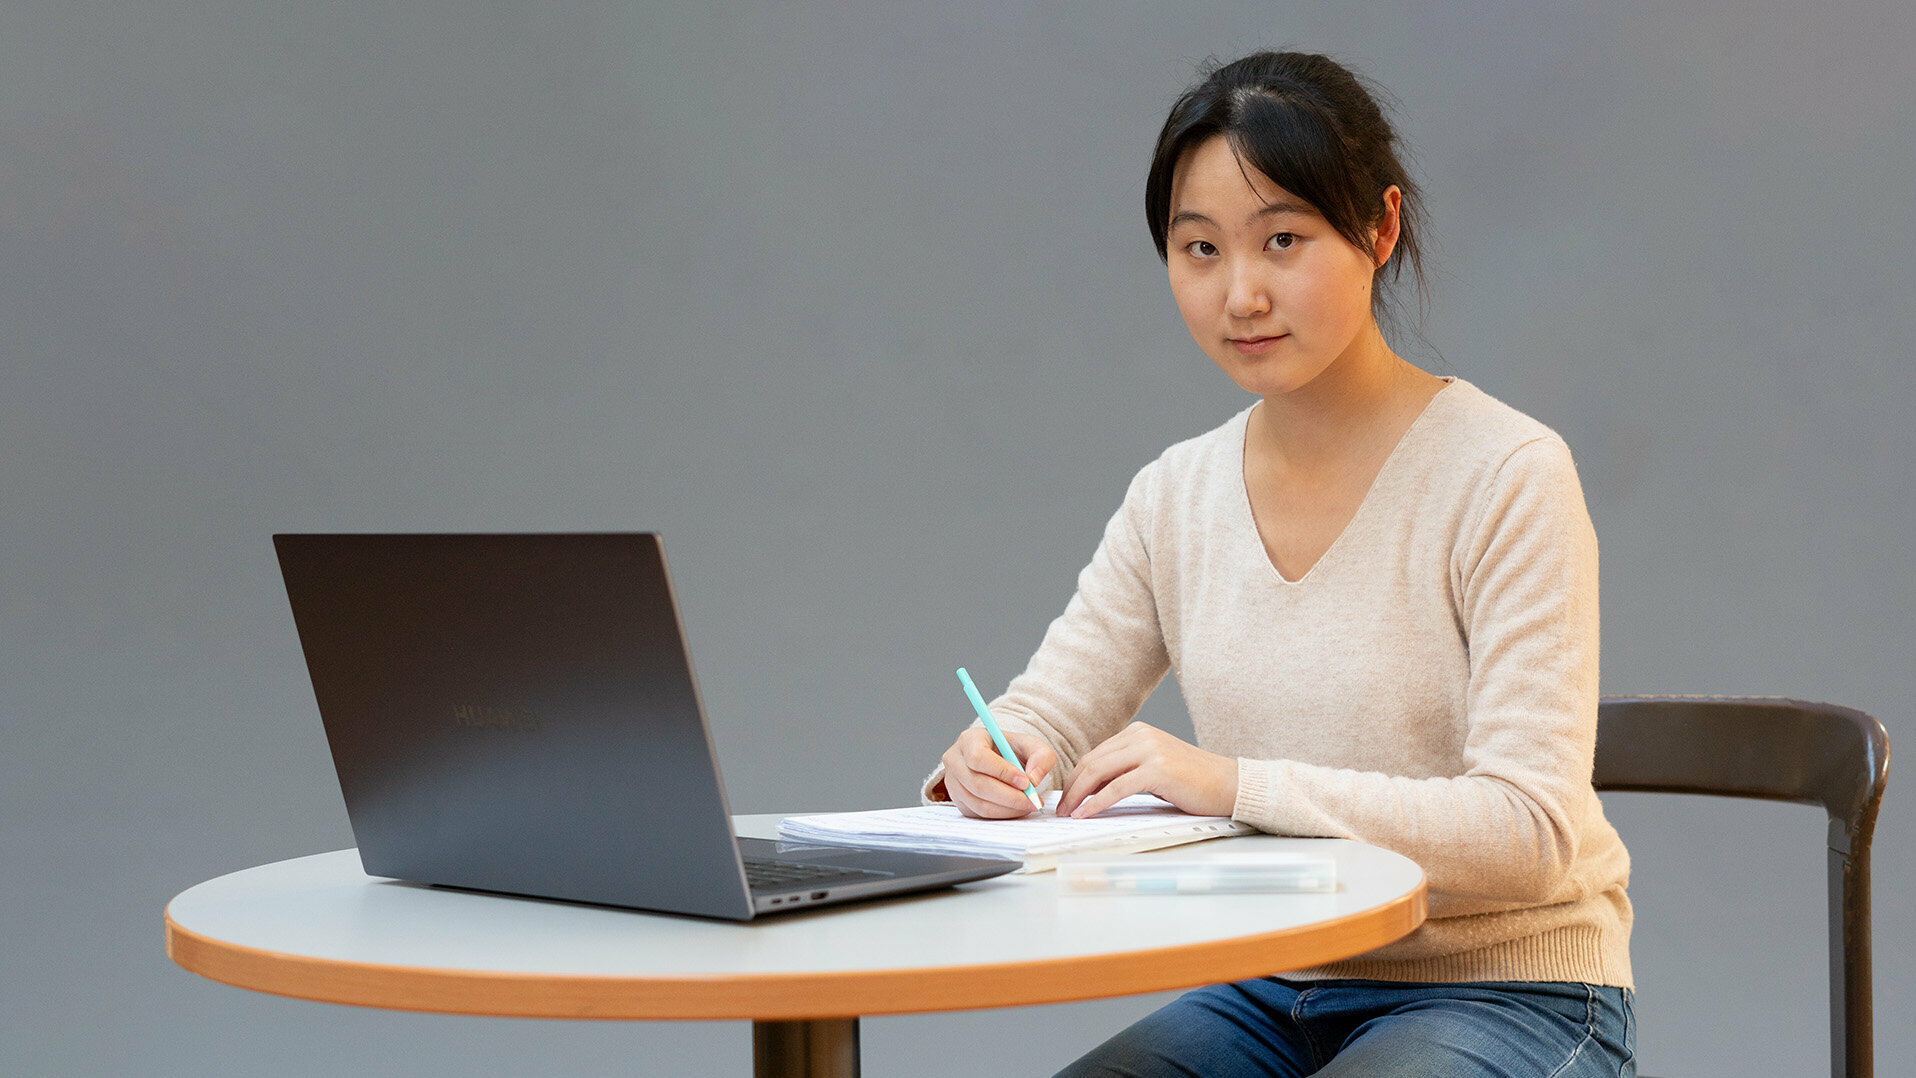 Eine junge Frau sitzt schreibend an einem Tisch mit Laptop